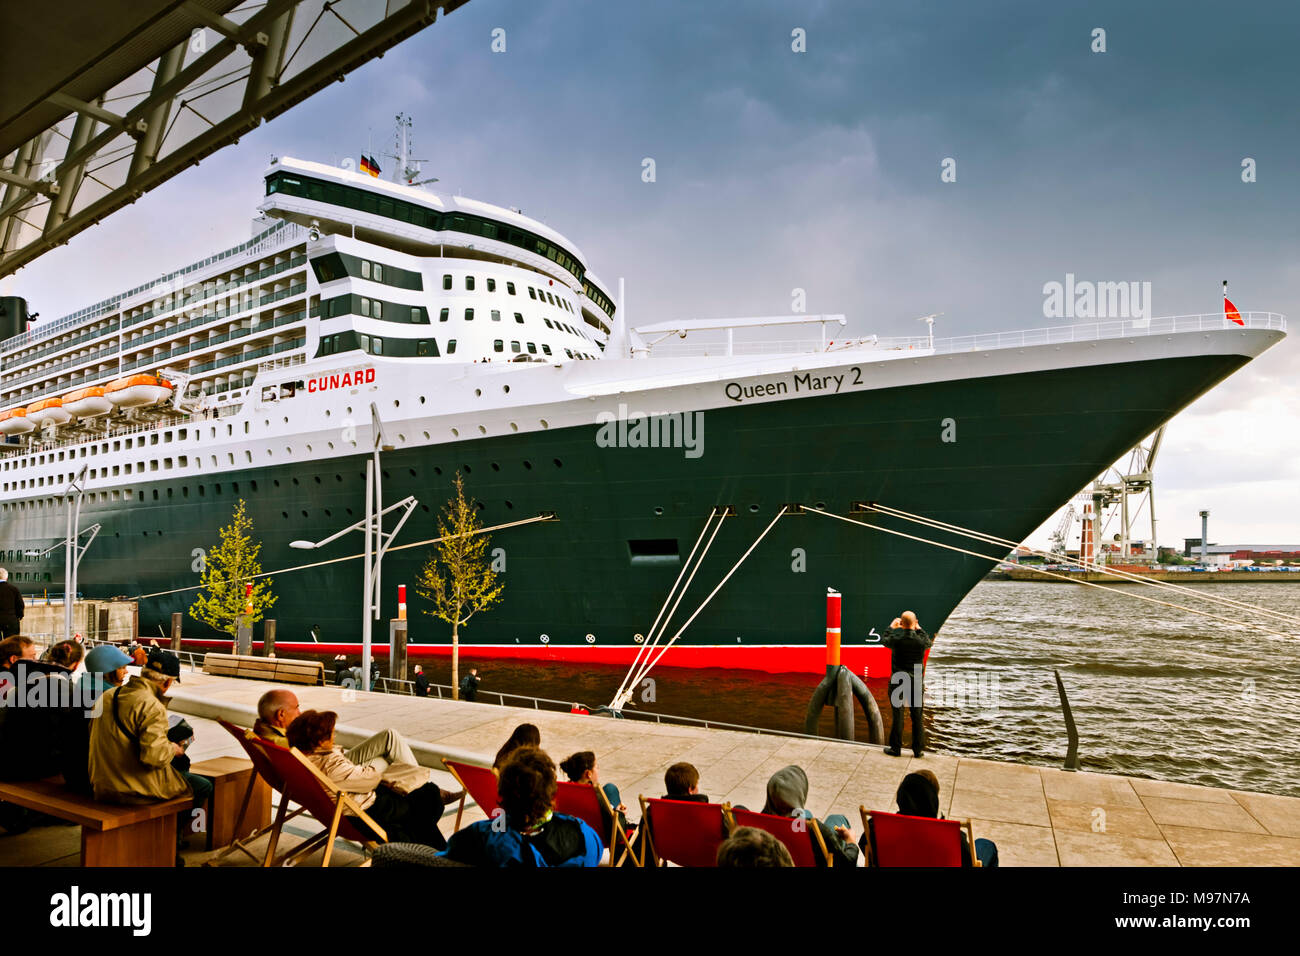 Deutschland, Amburgo, Elba, Hafen, Hafencity, Anleger, Cruise Center, Queen, Queen Mary Foto Stock